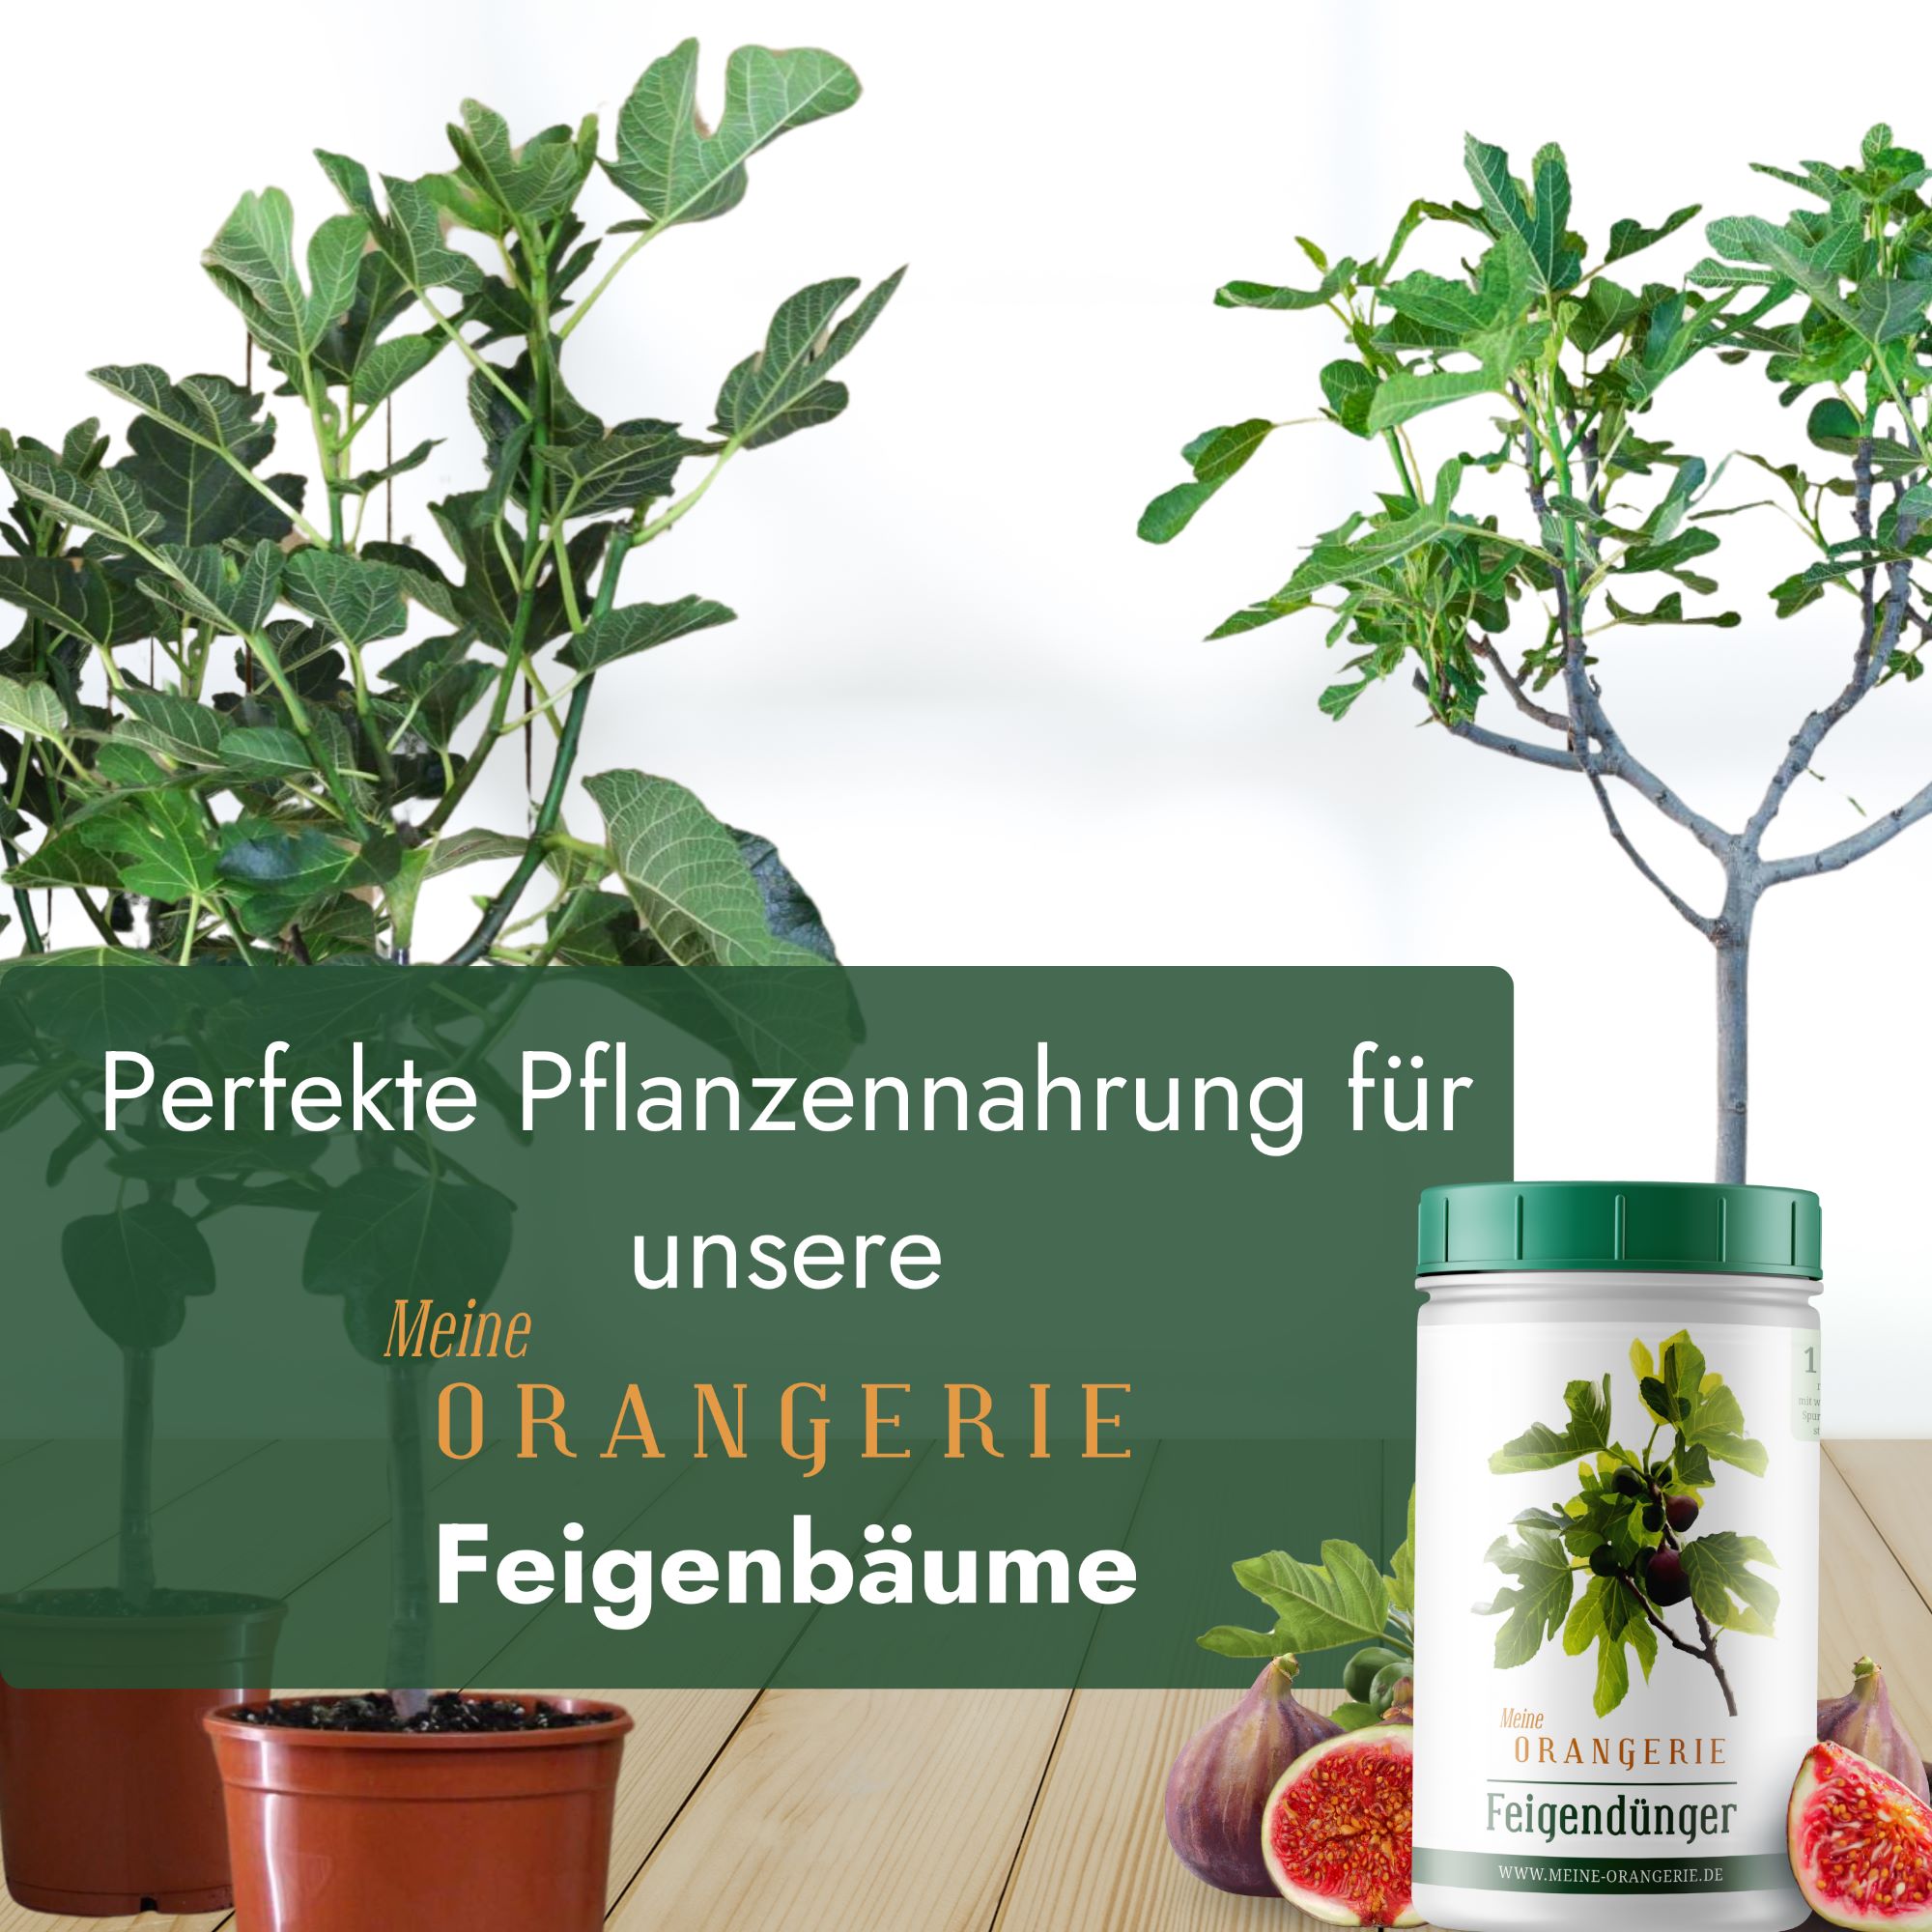 Meine Orangerie Feigendünger [1kg] - Premium Pflanzendünger für Feigenbäume